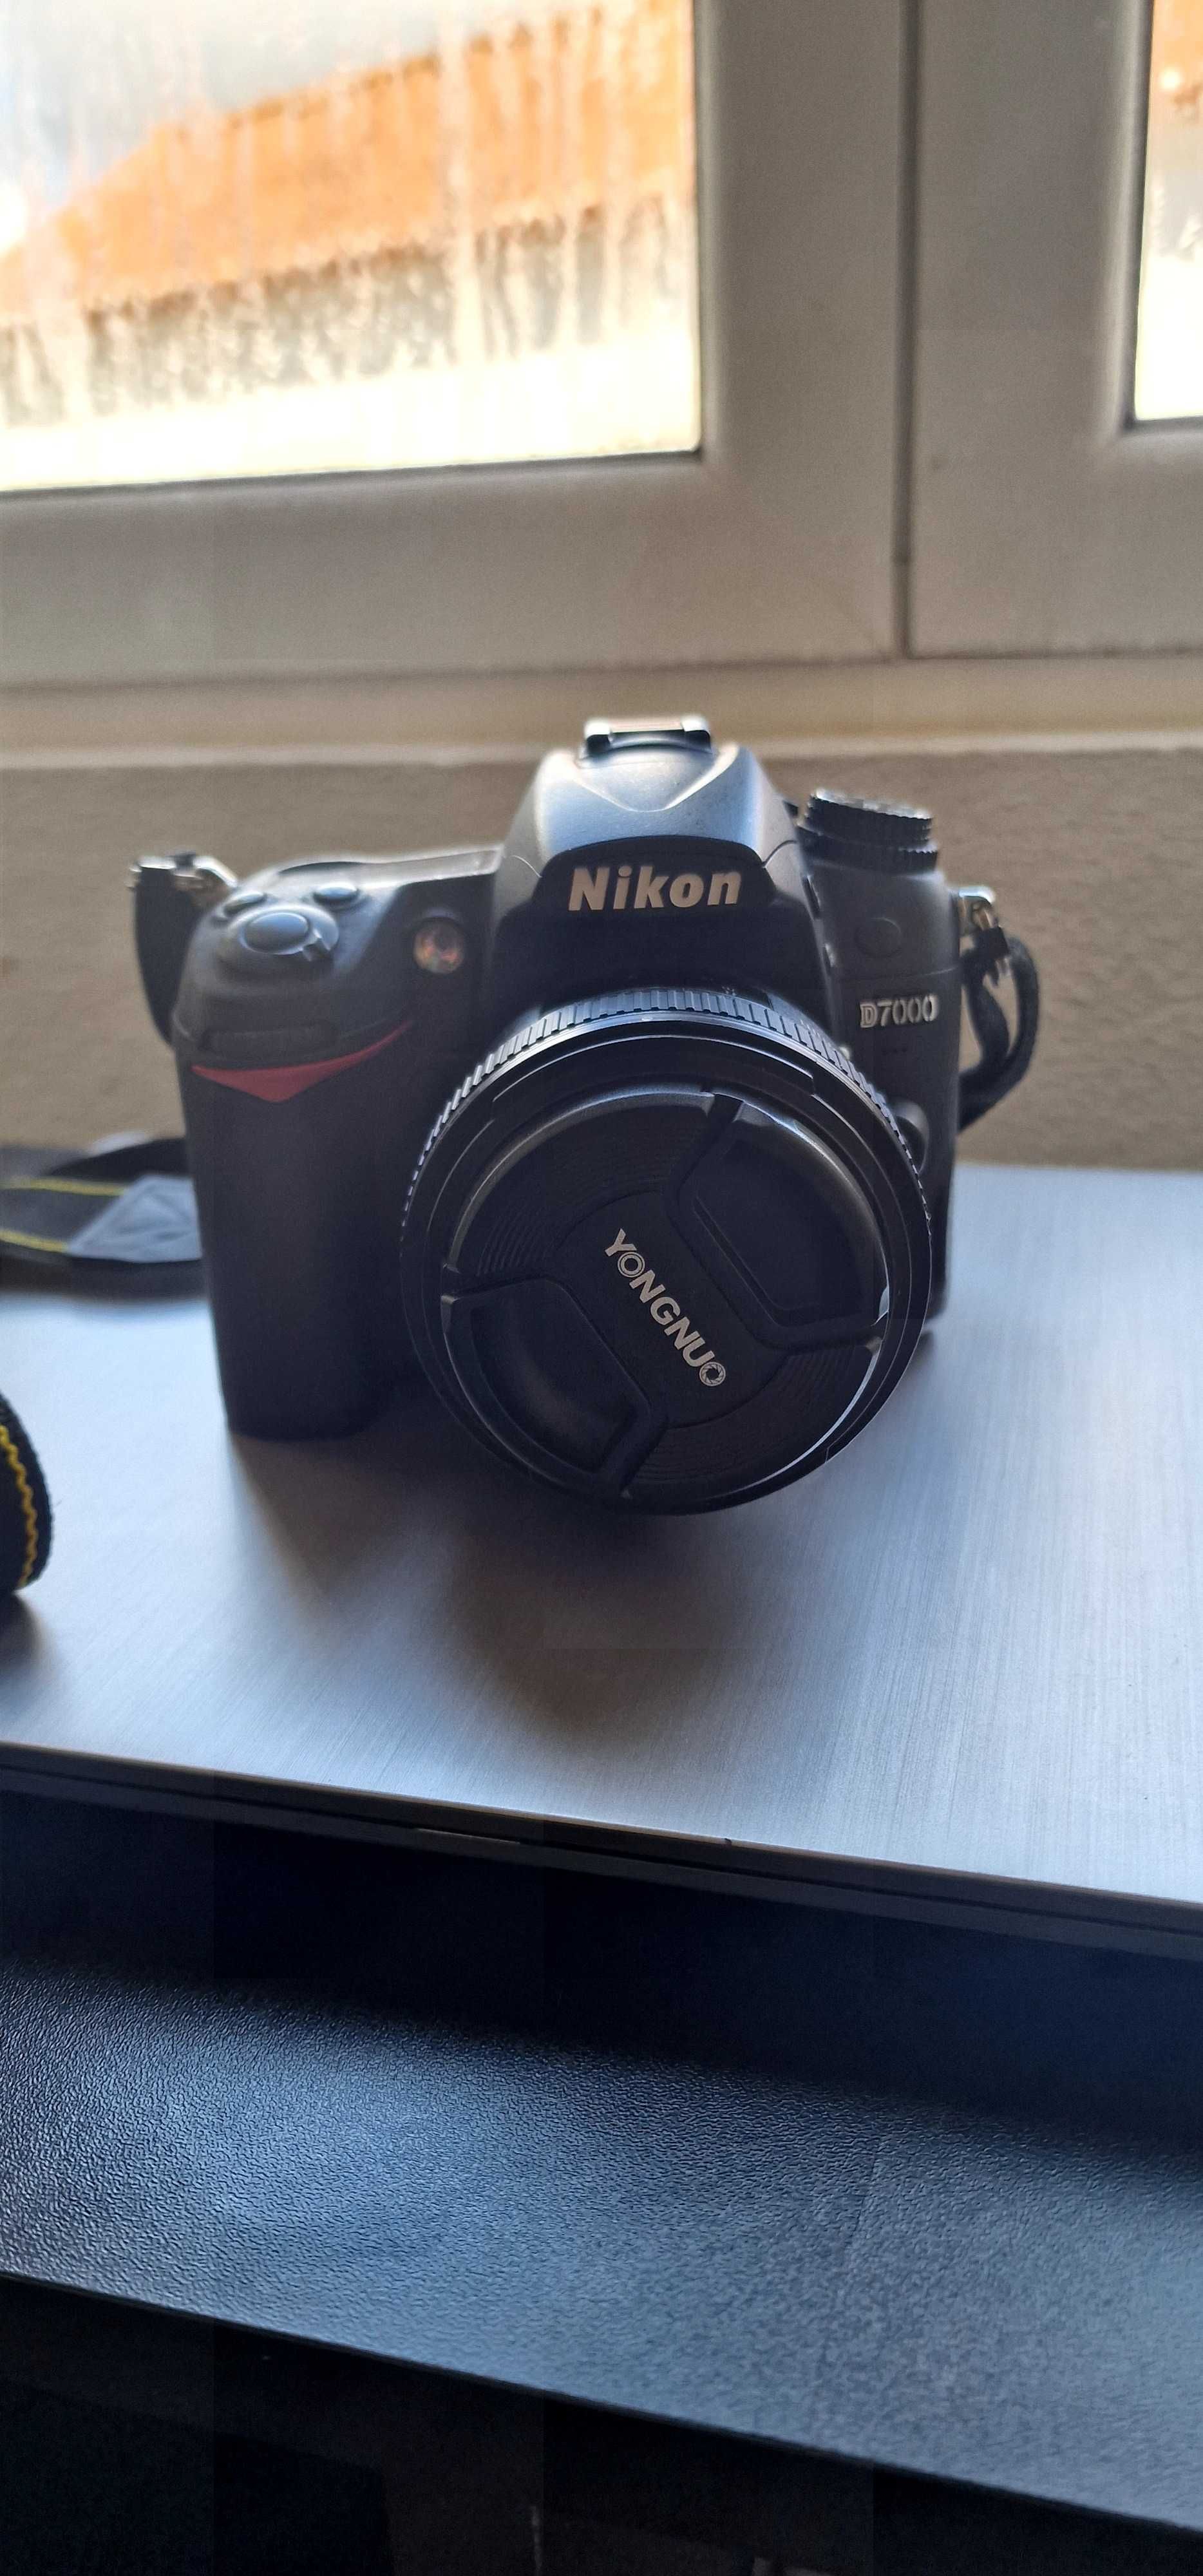 Camera Nikon D7000 - Semi Nova